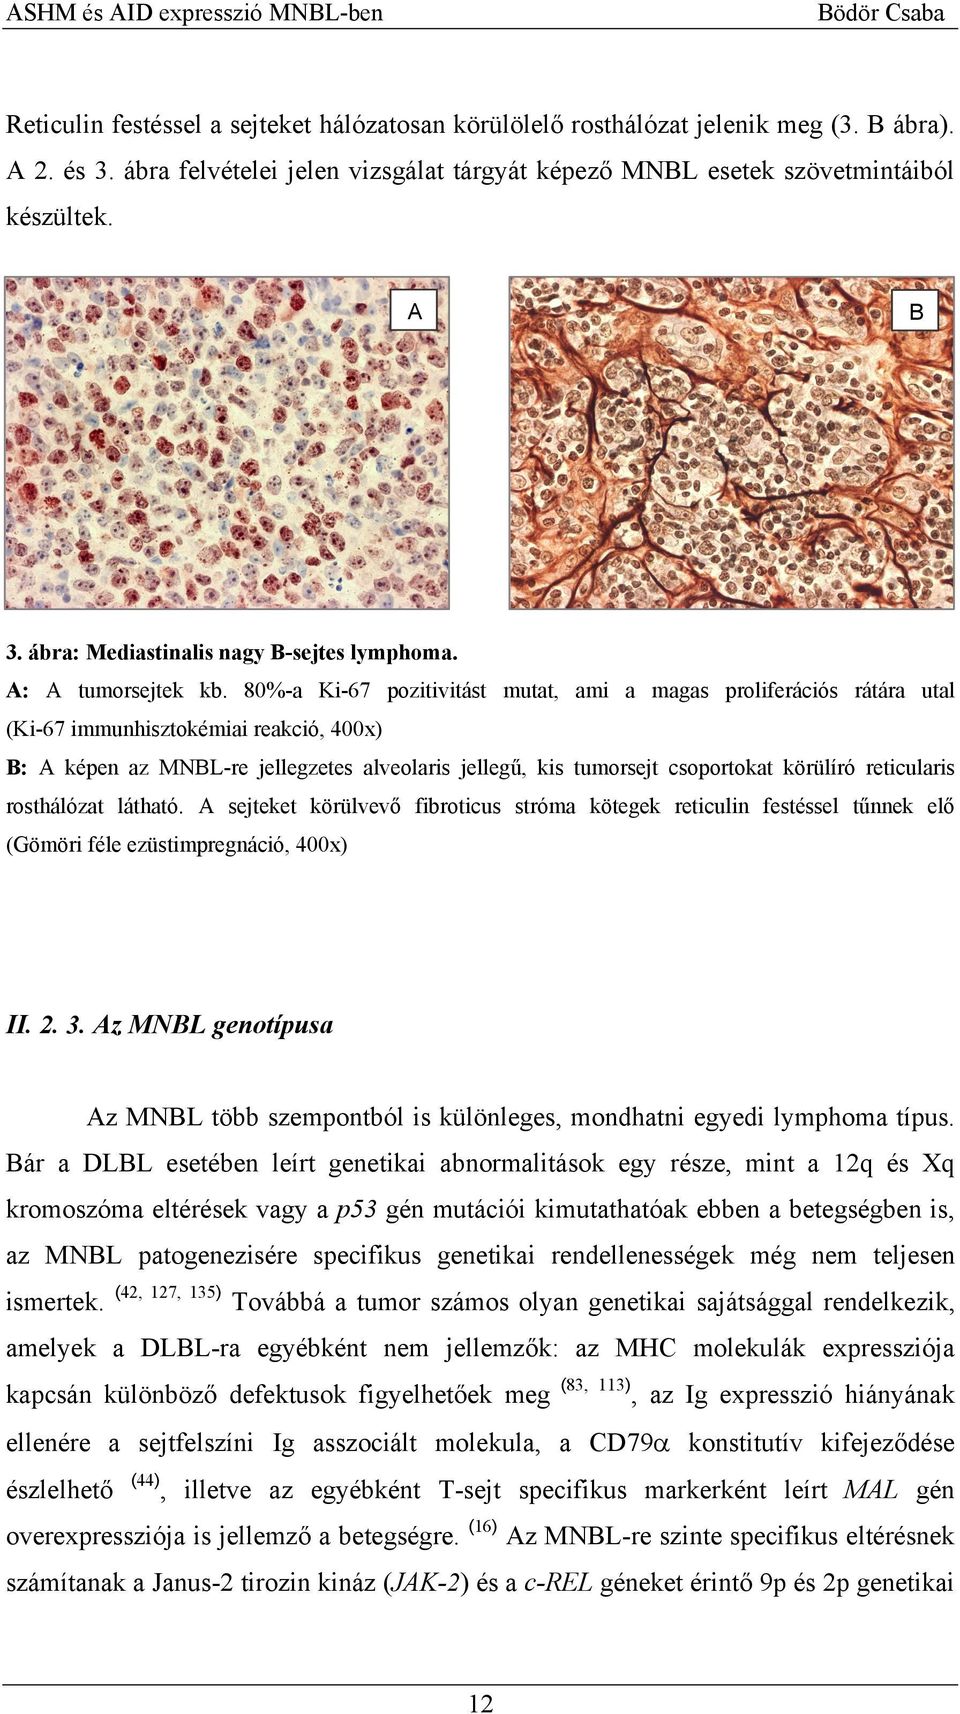 80%-a Ki-67 pozitivitást mutat, ami a magas proliferációs rátára utal (Ki-67 immunhisztokémiai reakció, 400x) B: A képen az MNBL-re jellegzetes alveolaris jellegű, kis tumorsejt csoportokat körülíró